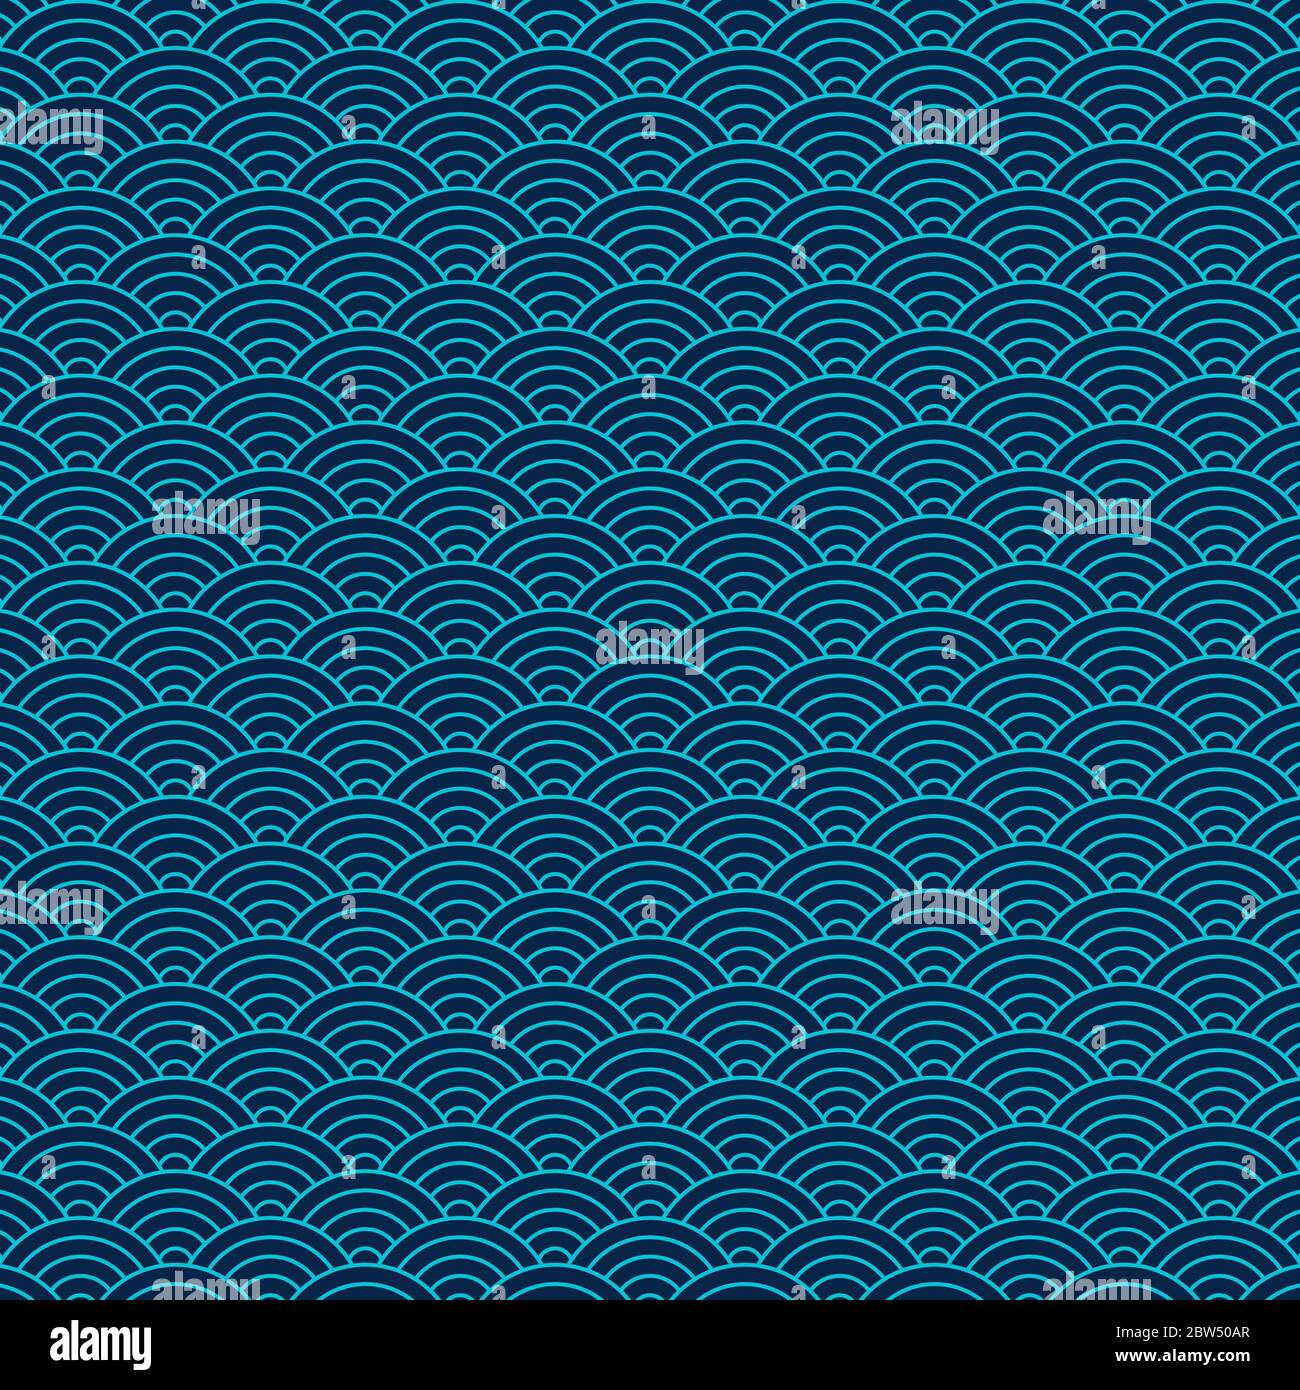 Wellenmuster, inspiriert von traditionellen japanischen geometrischen Mustern. Abstraktes Vektordesign. Blaues Seigaiha-Muster. Stock Vektor